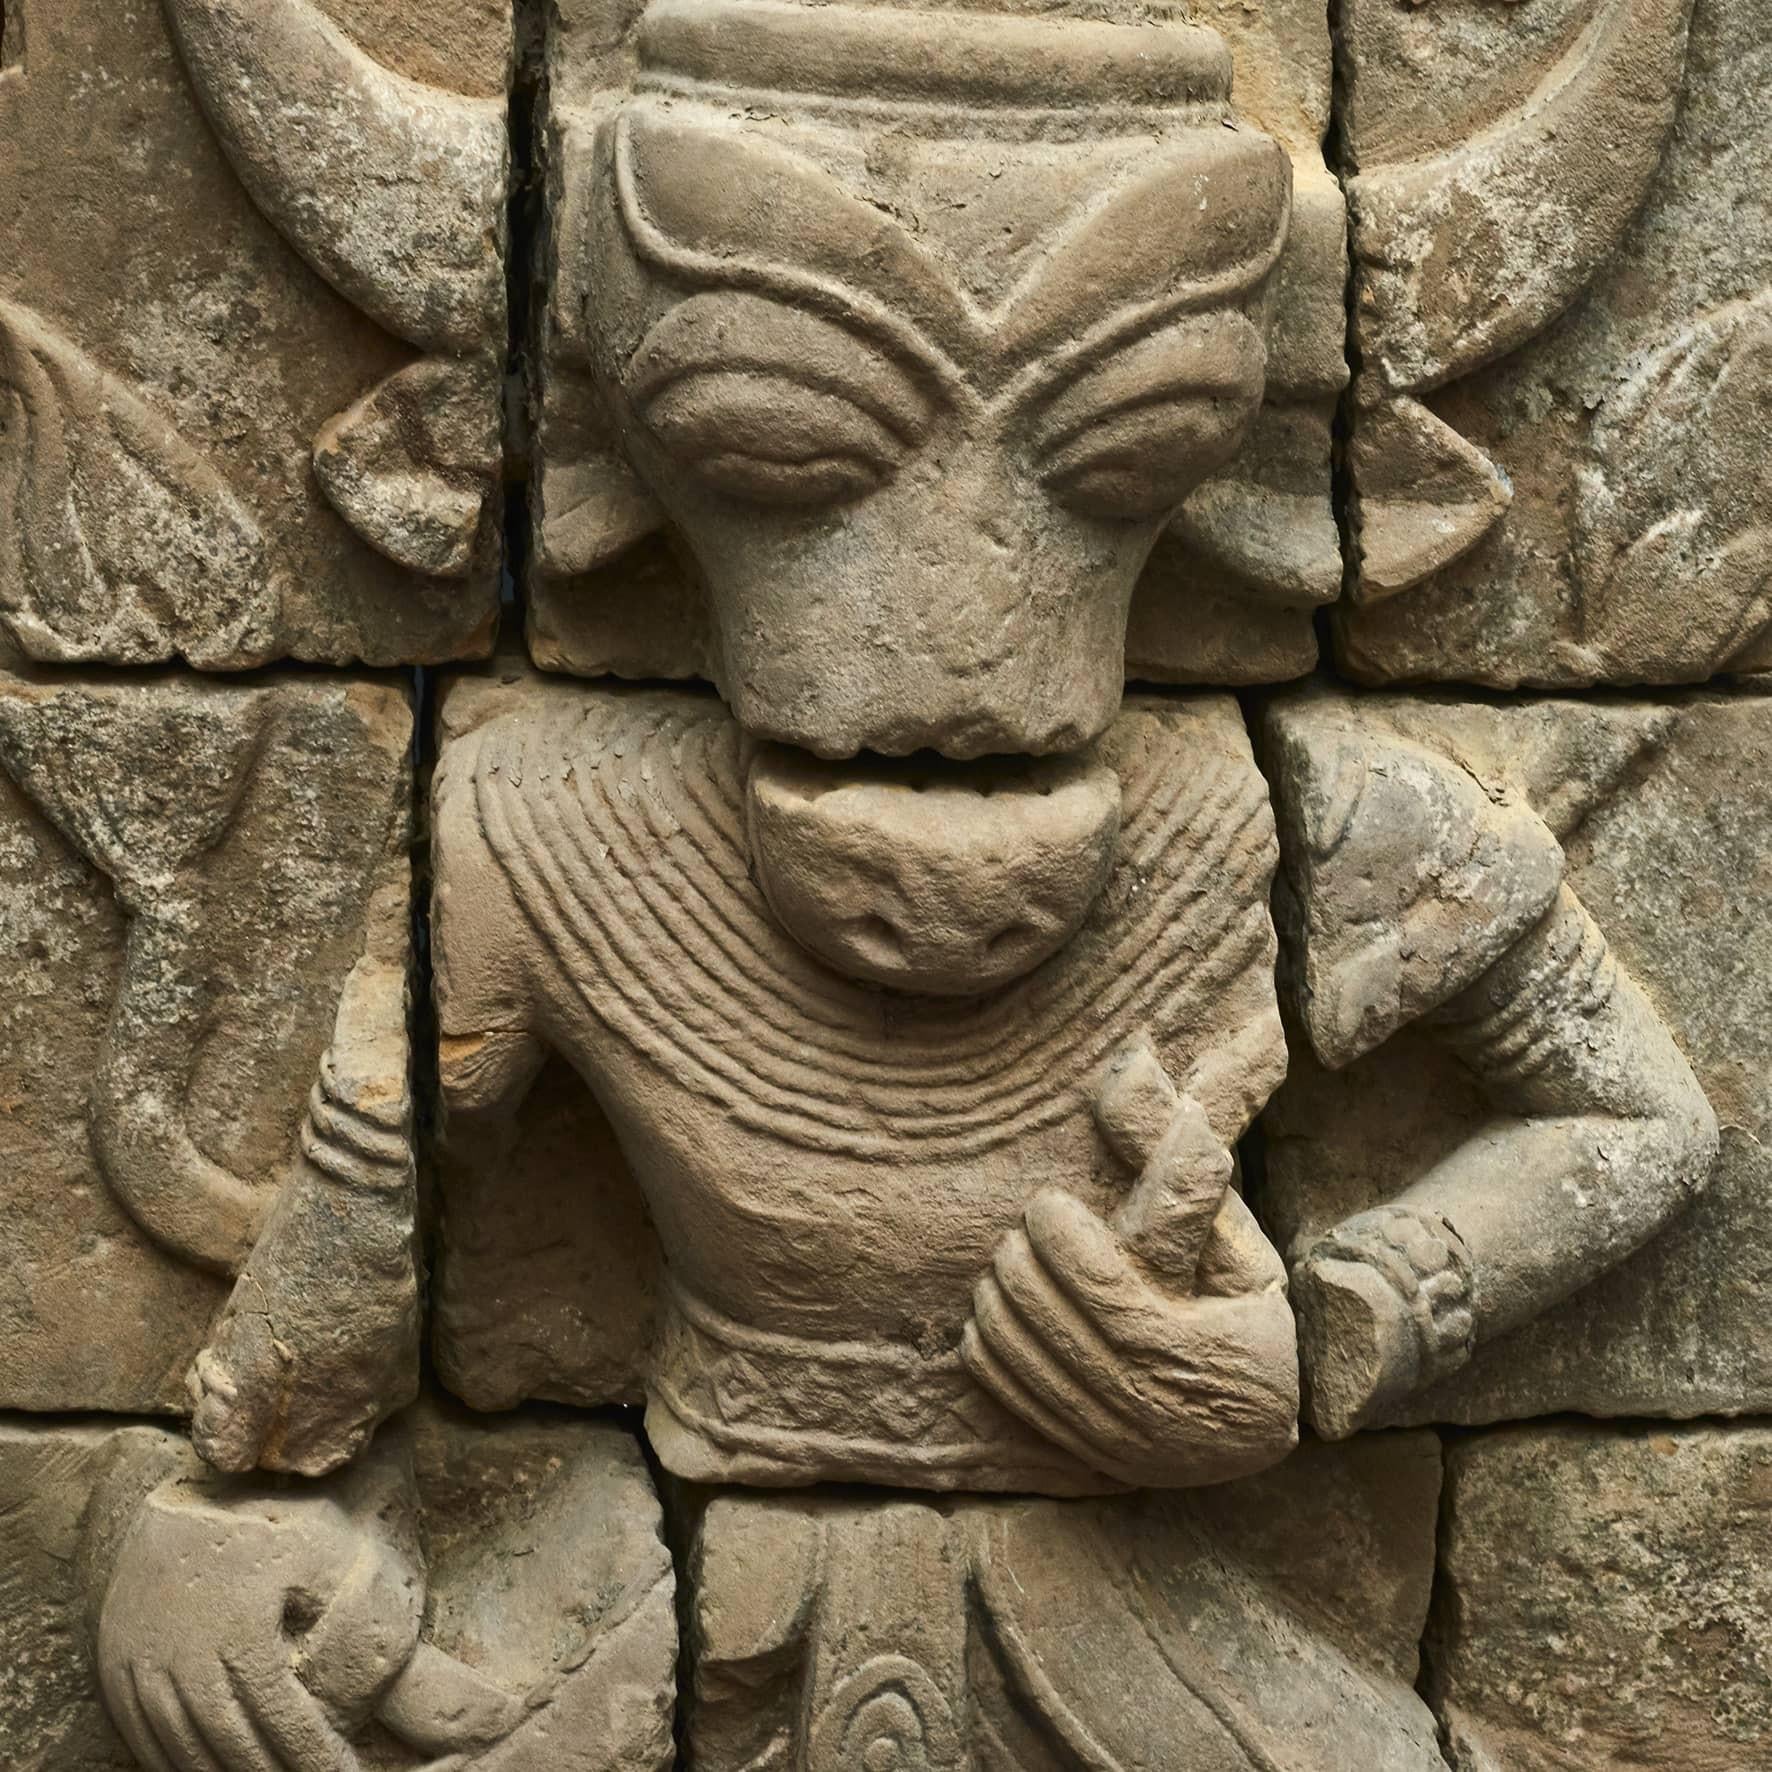 Hinduistische Sandsteinschnitzerei, die den Gott Nandi in menschlicher Gestalt darstellt.
 600-800 Jahre alt, wahrscheinlich älter.
Eine außergewöhnliche, in Sandstein gehauene Skulptur aus einem Tempel in Arakan, Birma.
Original in 12 Teilen -